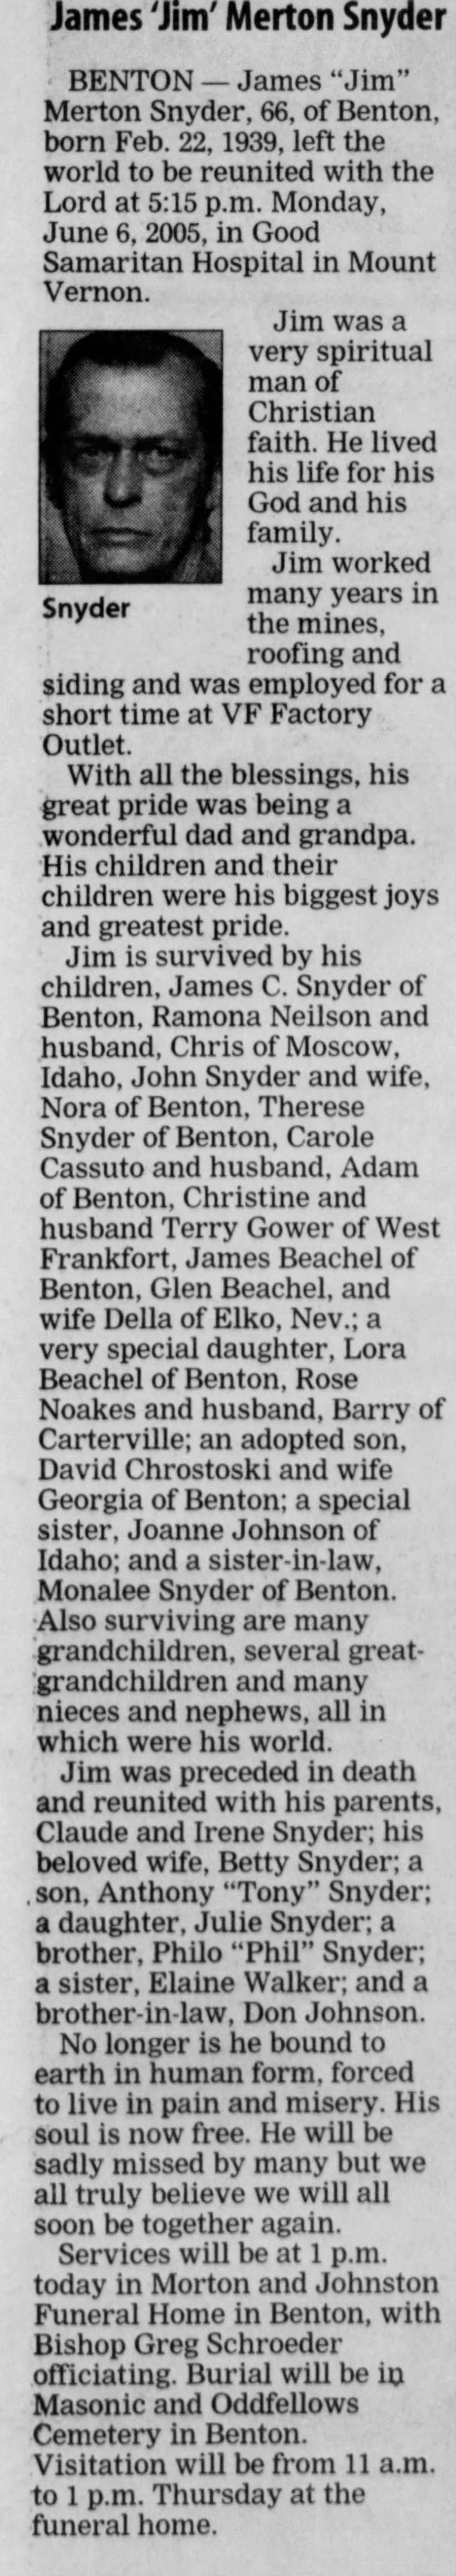 Obituary for James Merton Snyder, 1939-2005 (Aged 66)